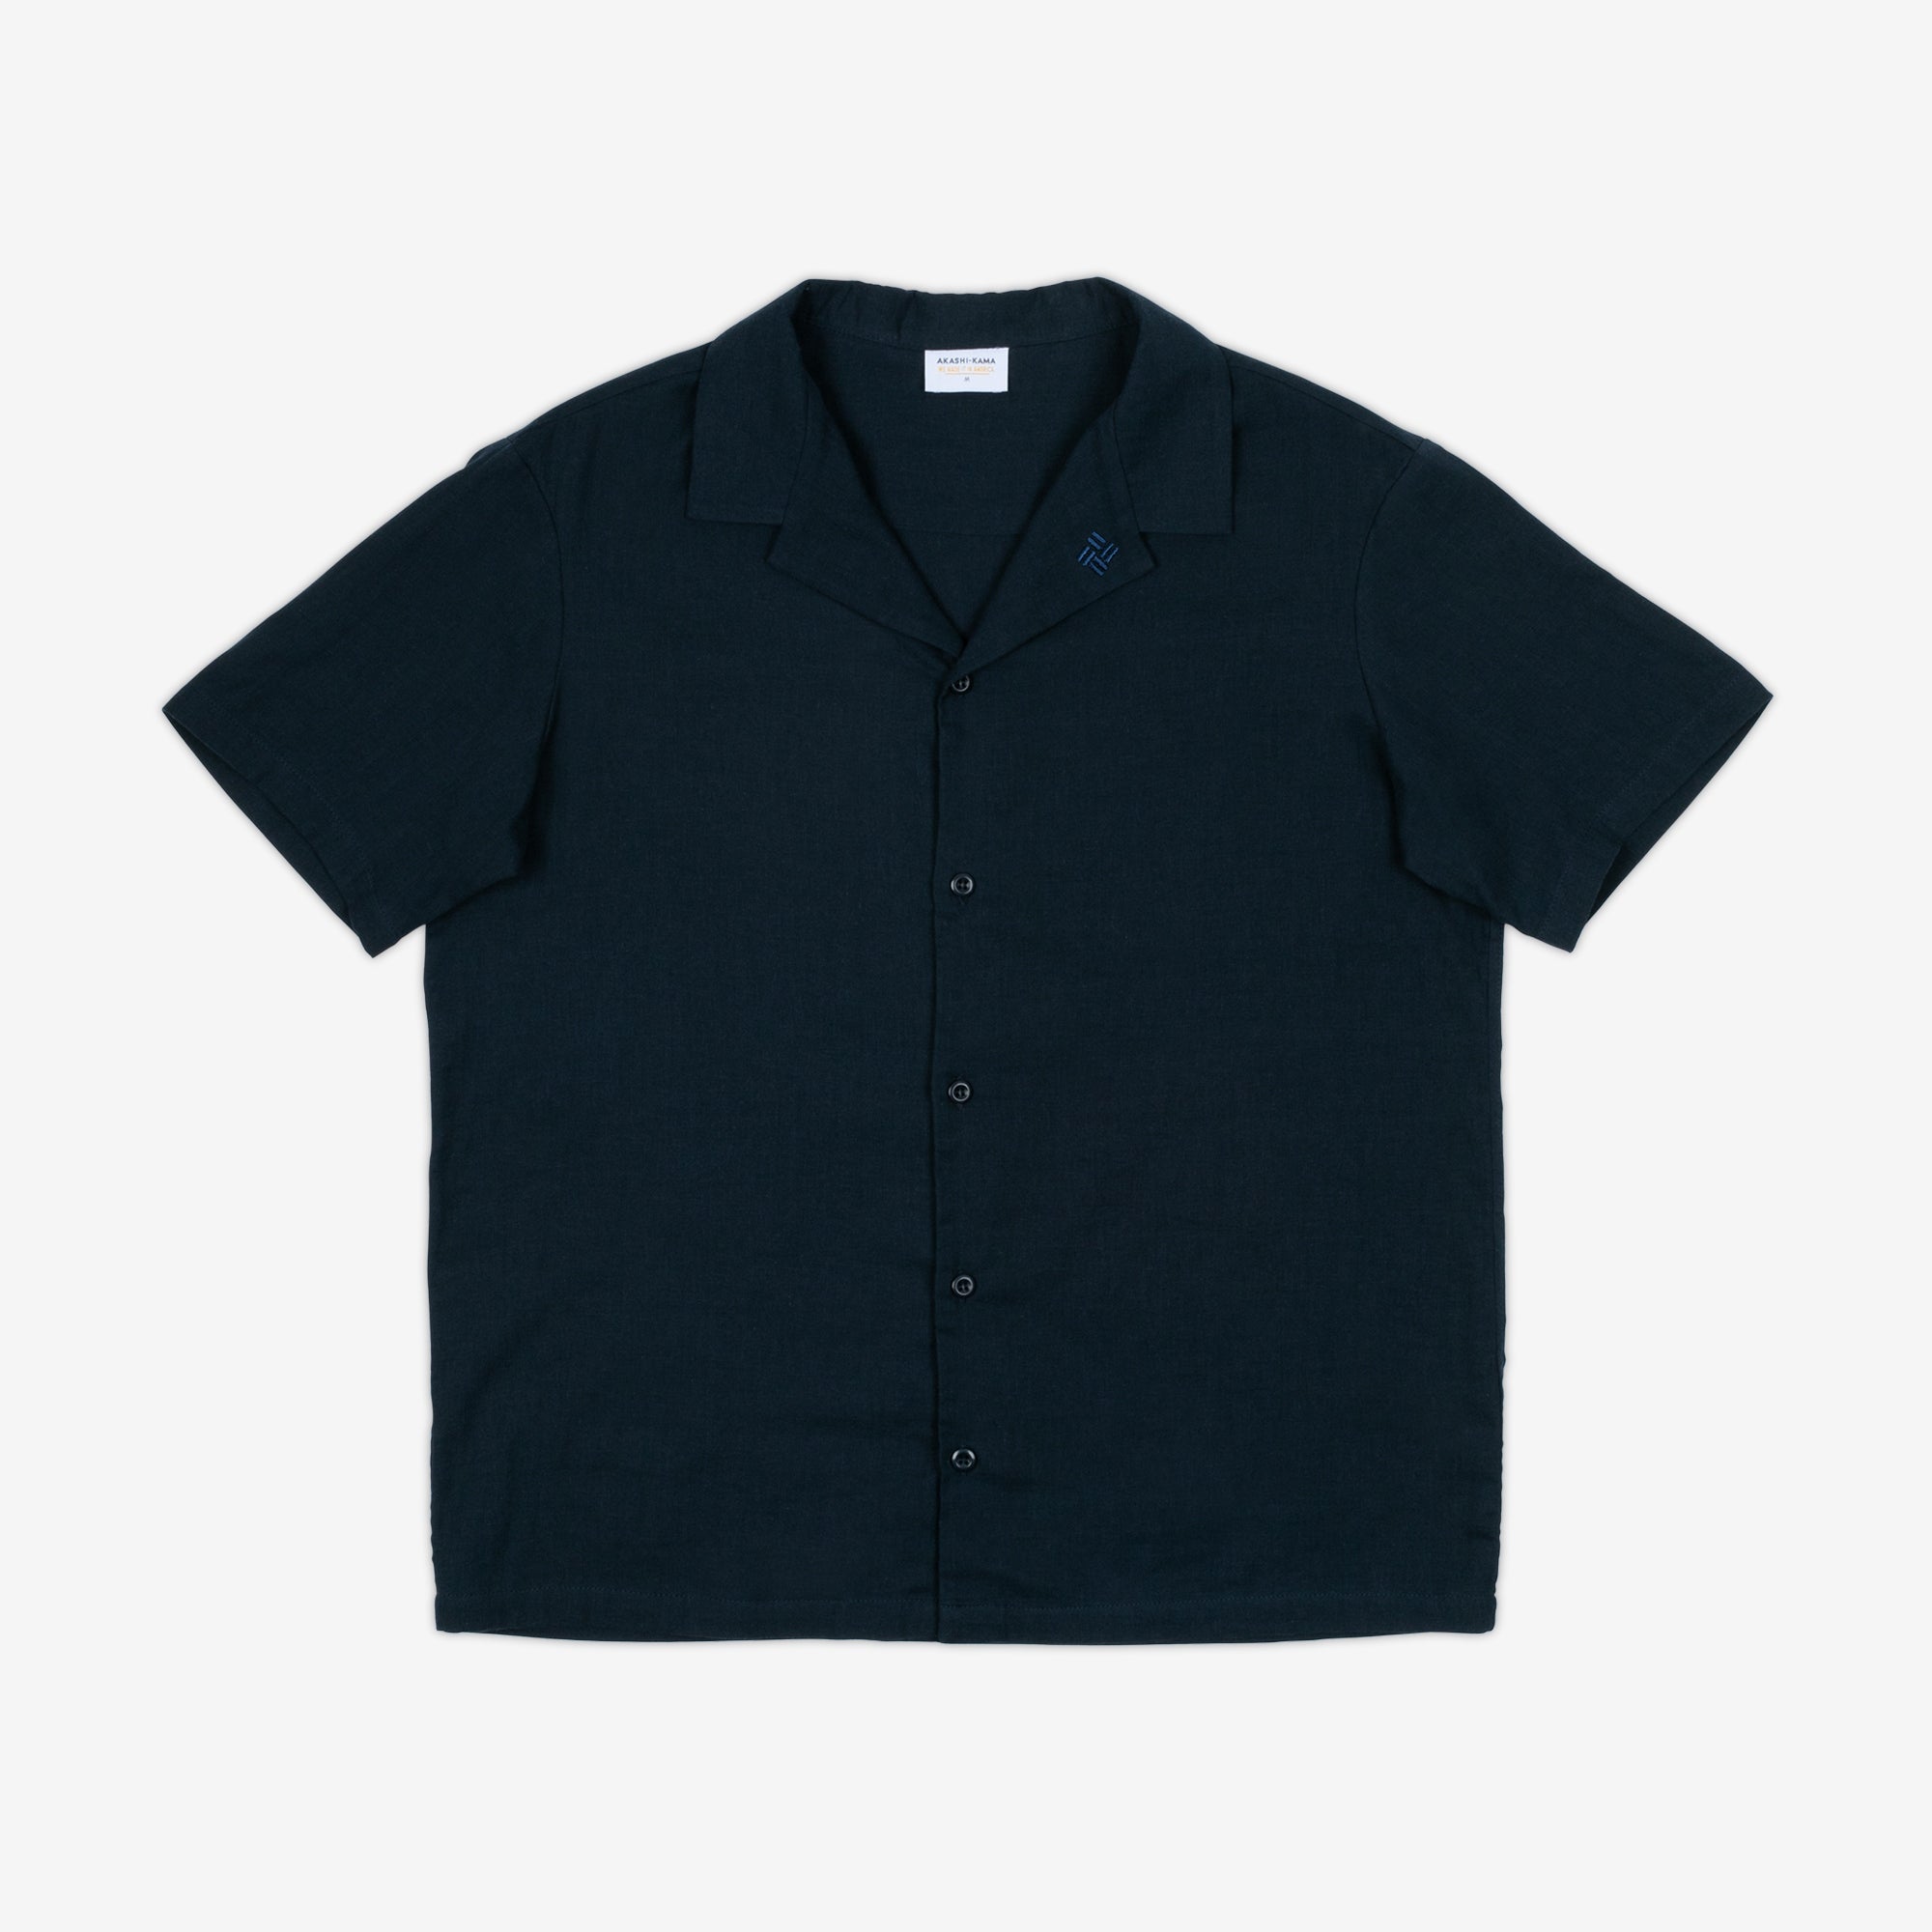 AKASHI-KAMA Camp Collar Shirt in Deep Indigo | Button Down Style Japanese Streetwear Made in USA